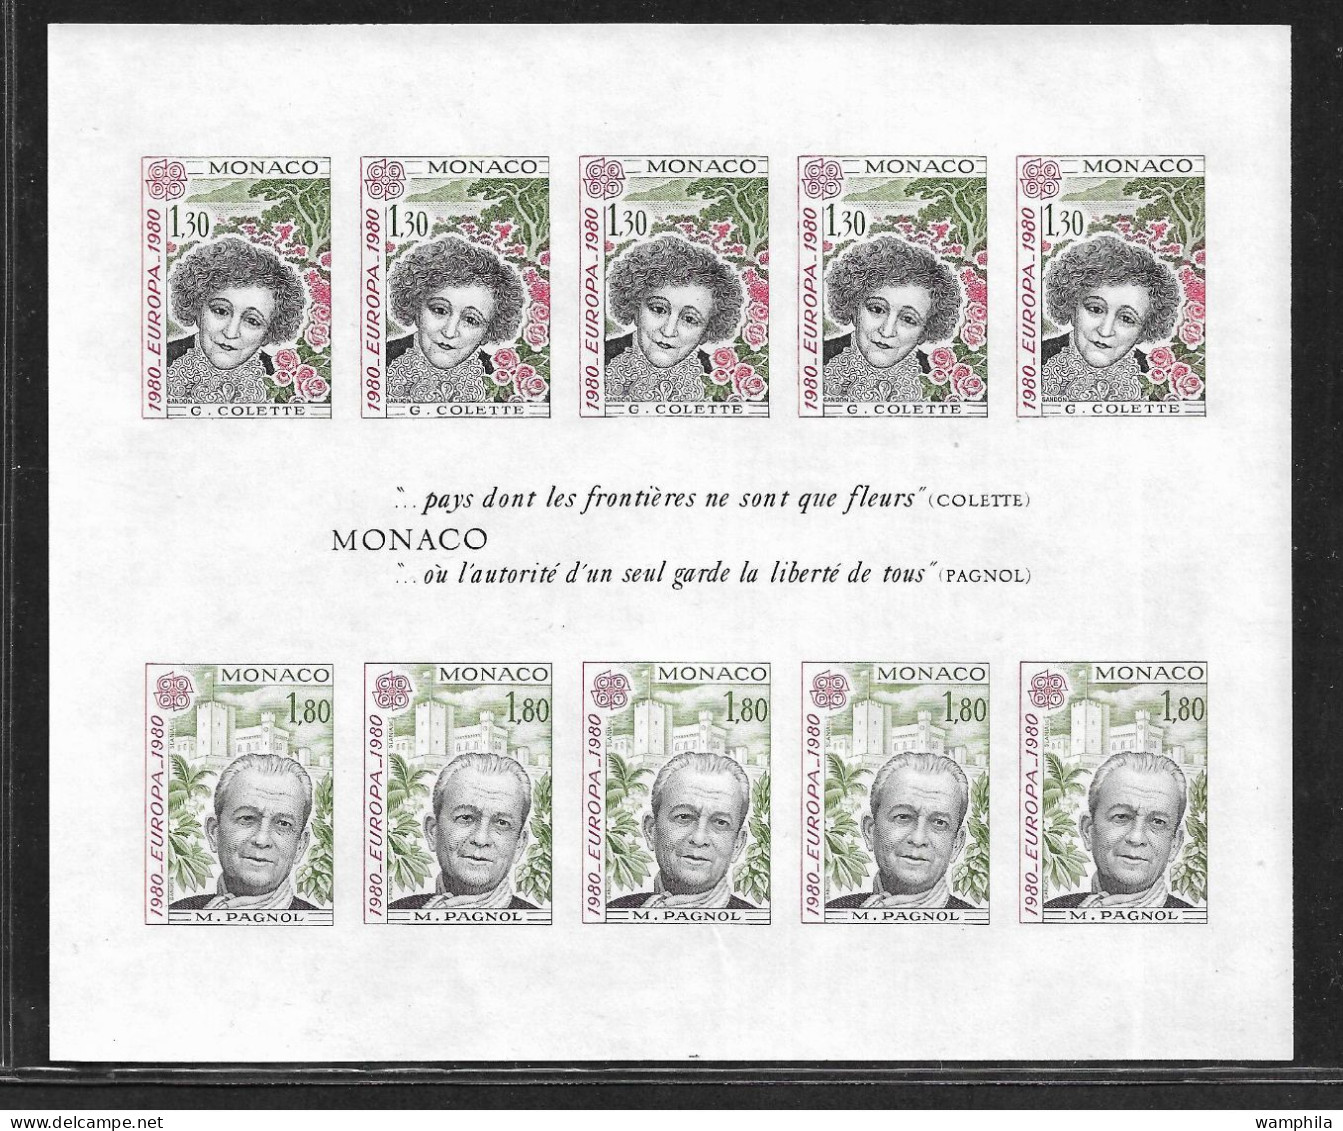 Monaco Bloc N°18a** NON Dentelé. Europa 1980 (S.G.Colette, M.Pagnol). RARE. Cote 540€ - Varietà